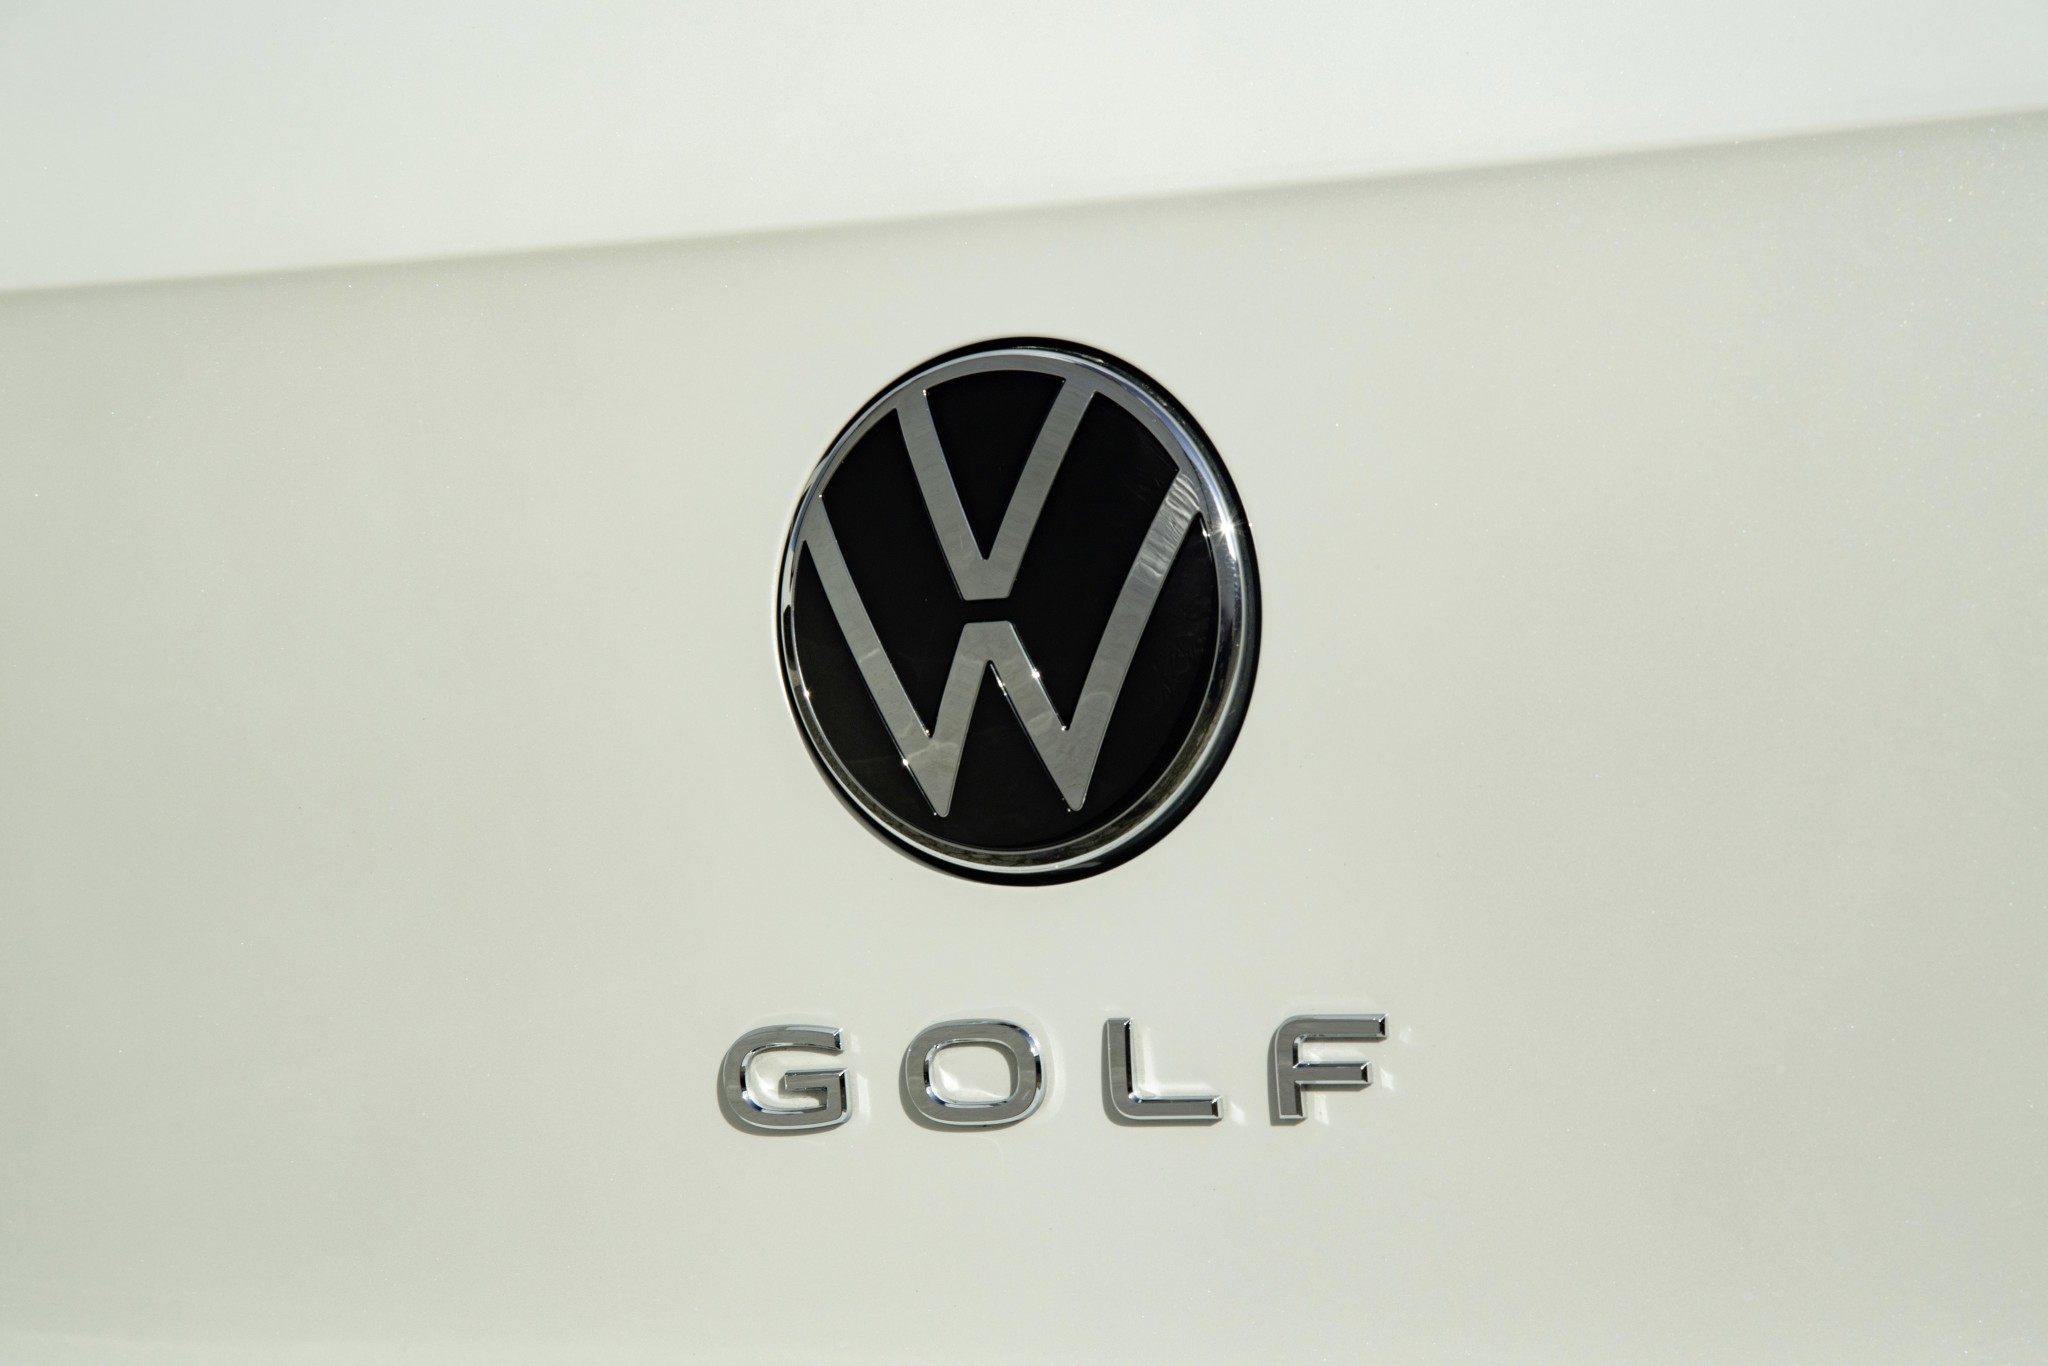 Qué significa el logo de Volkswagen